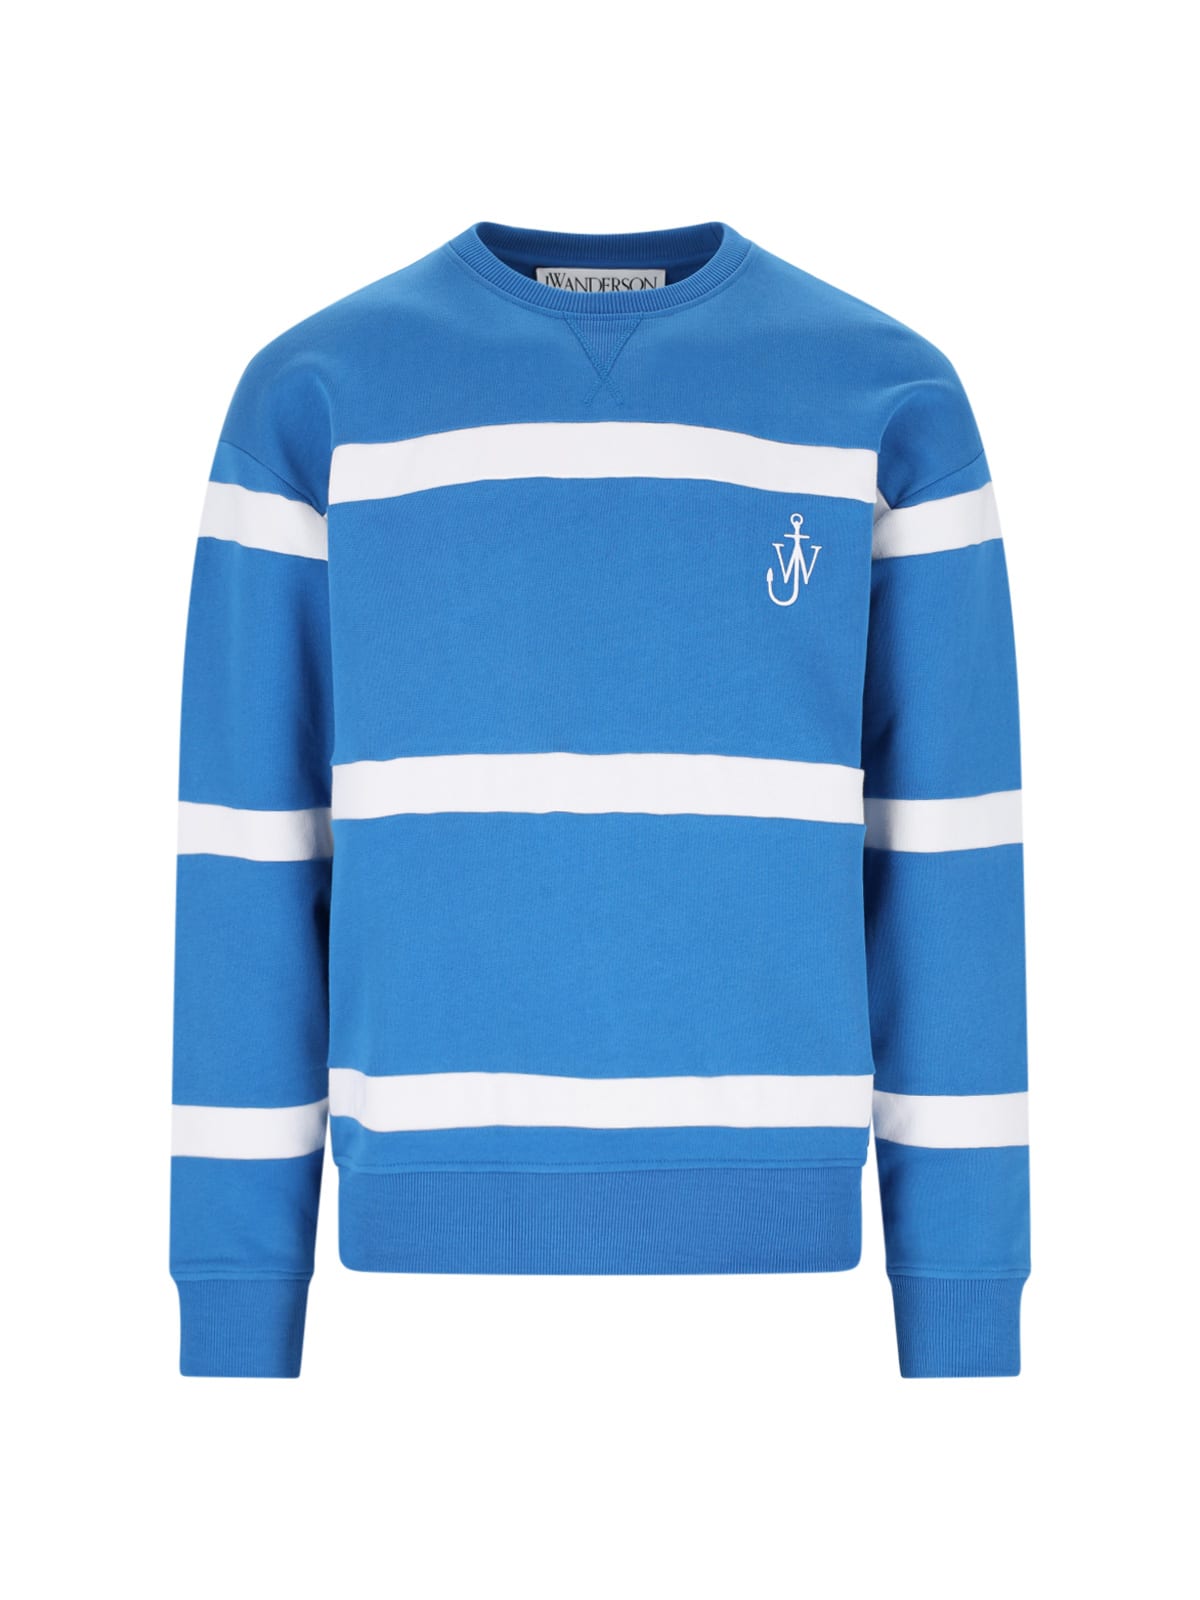 J.W. Anderson Striped Sweatshirt